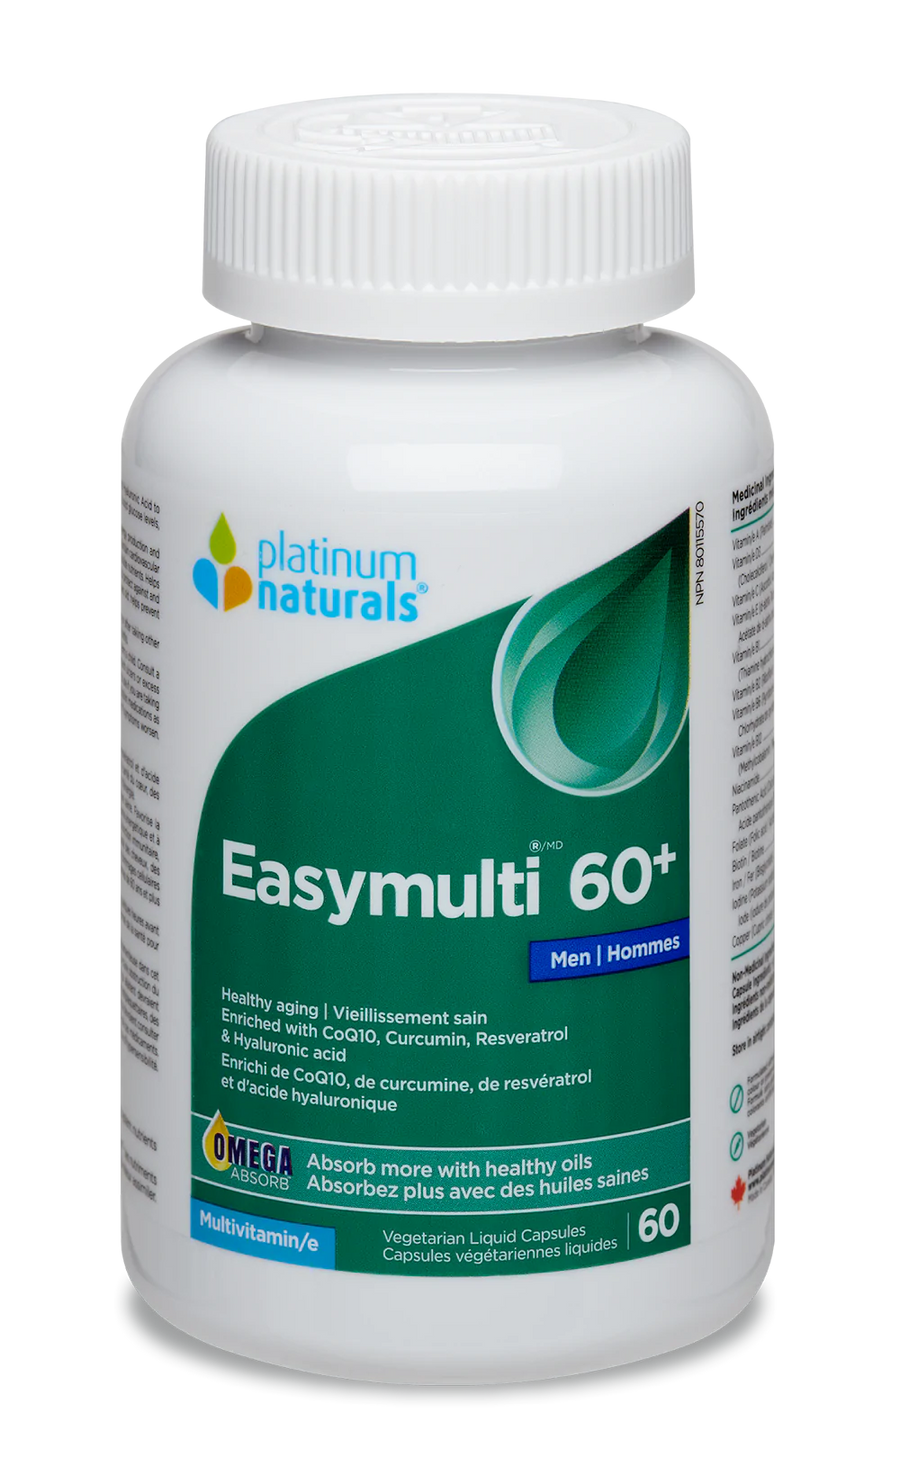 Platinum Naturals Easymulti 60+ for Men Veg. Liquid Capsules